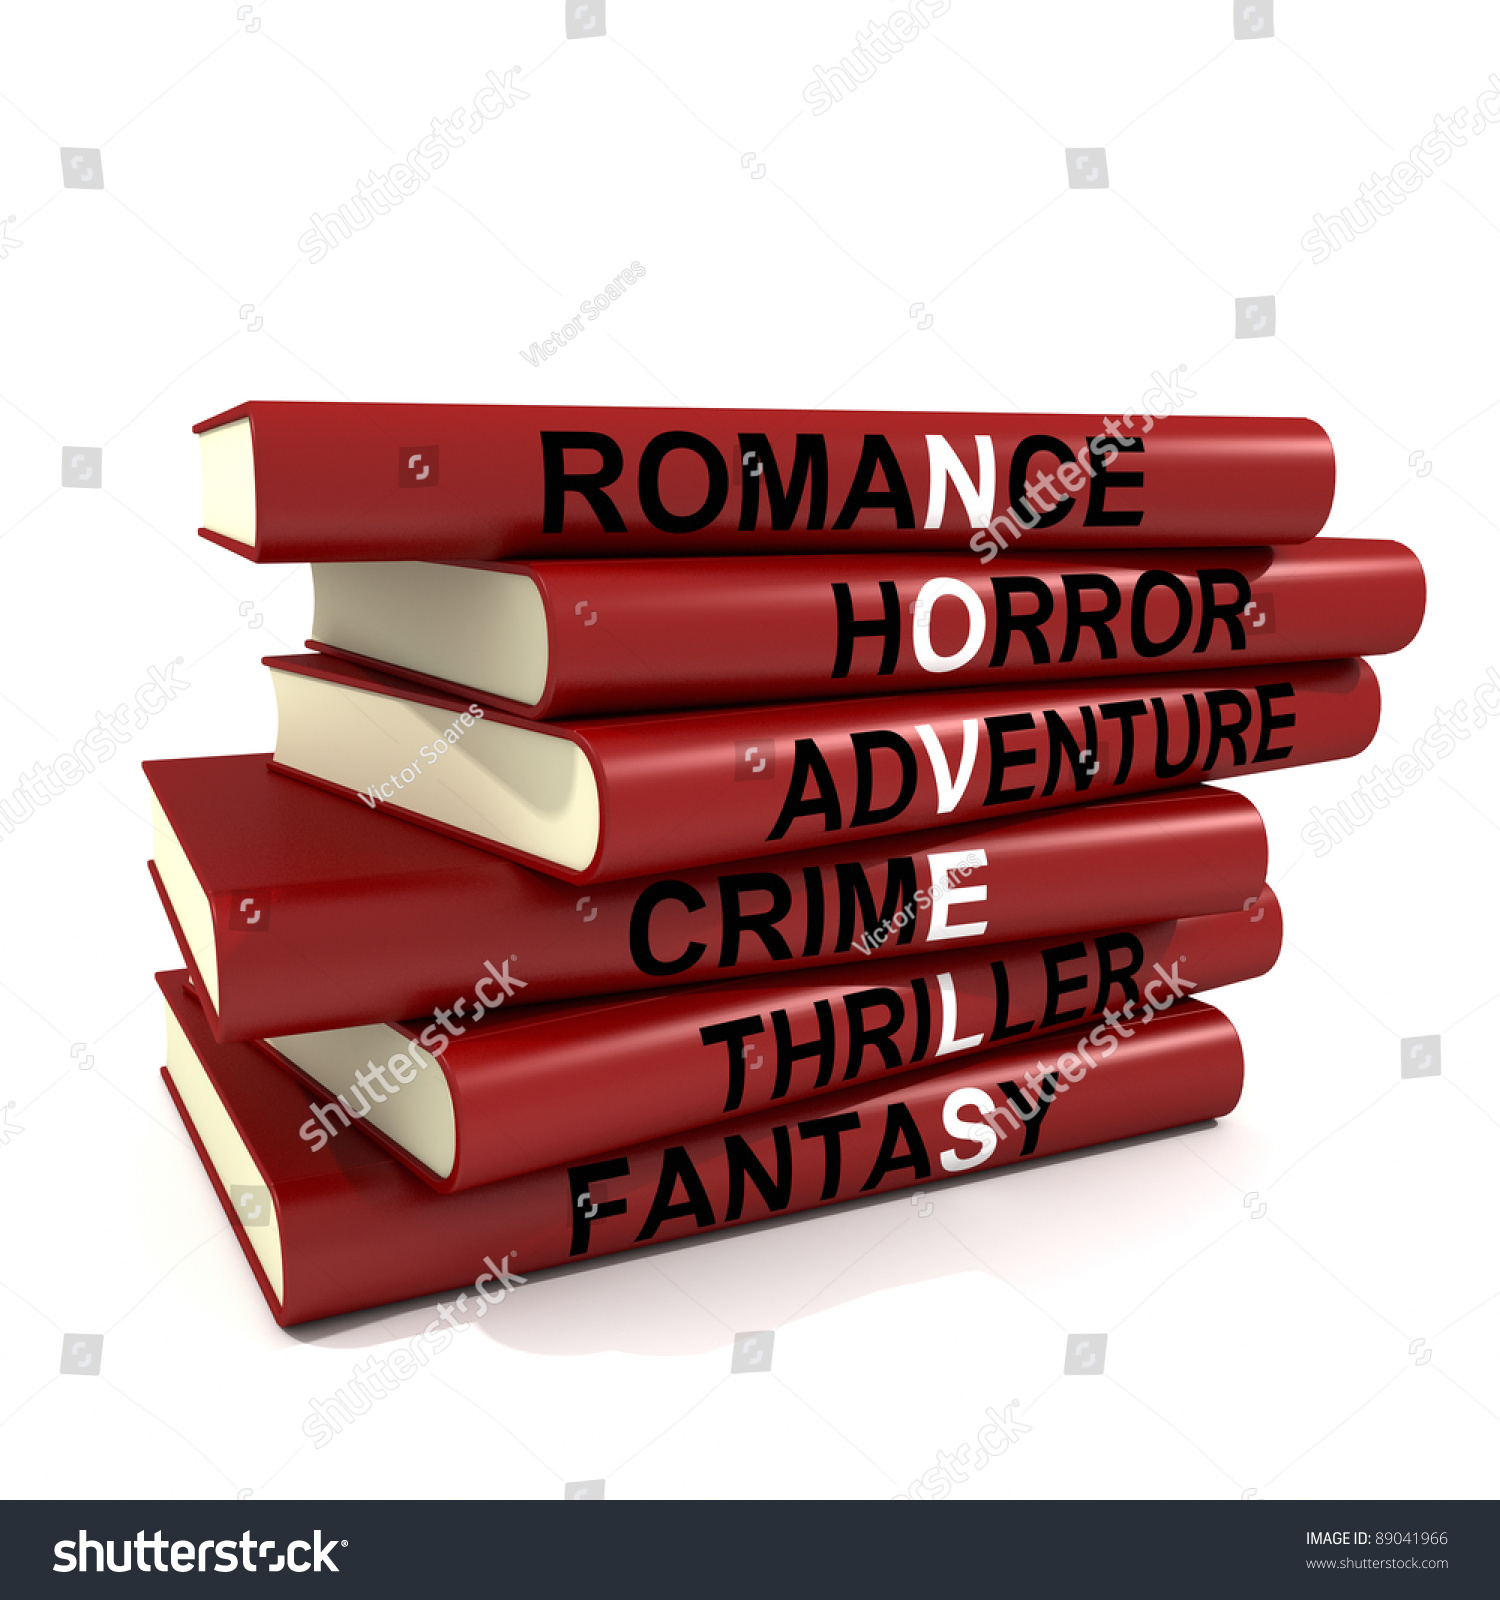 Image result for a stack of novels